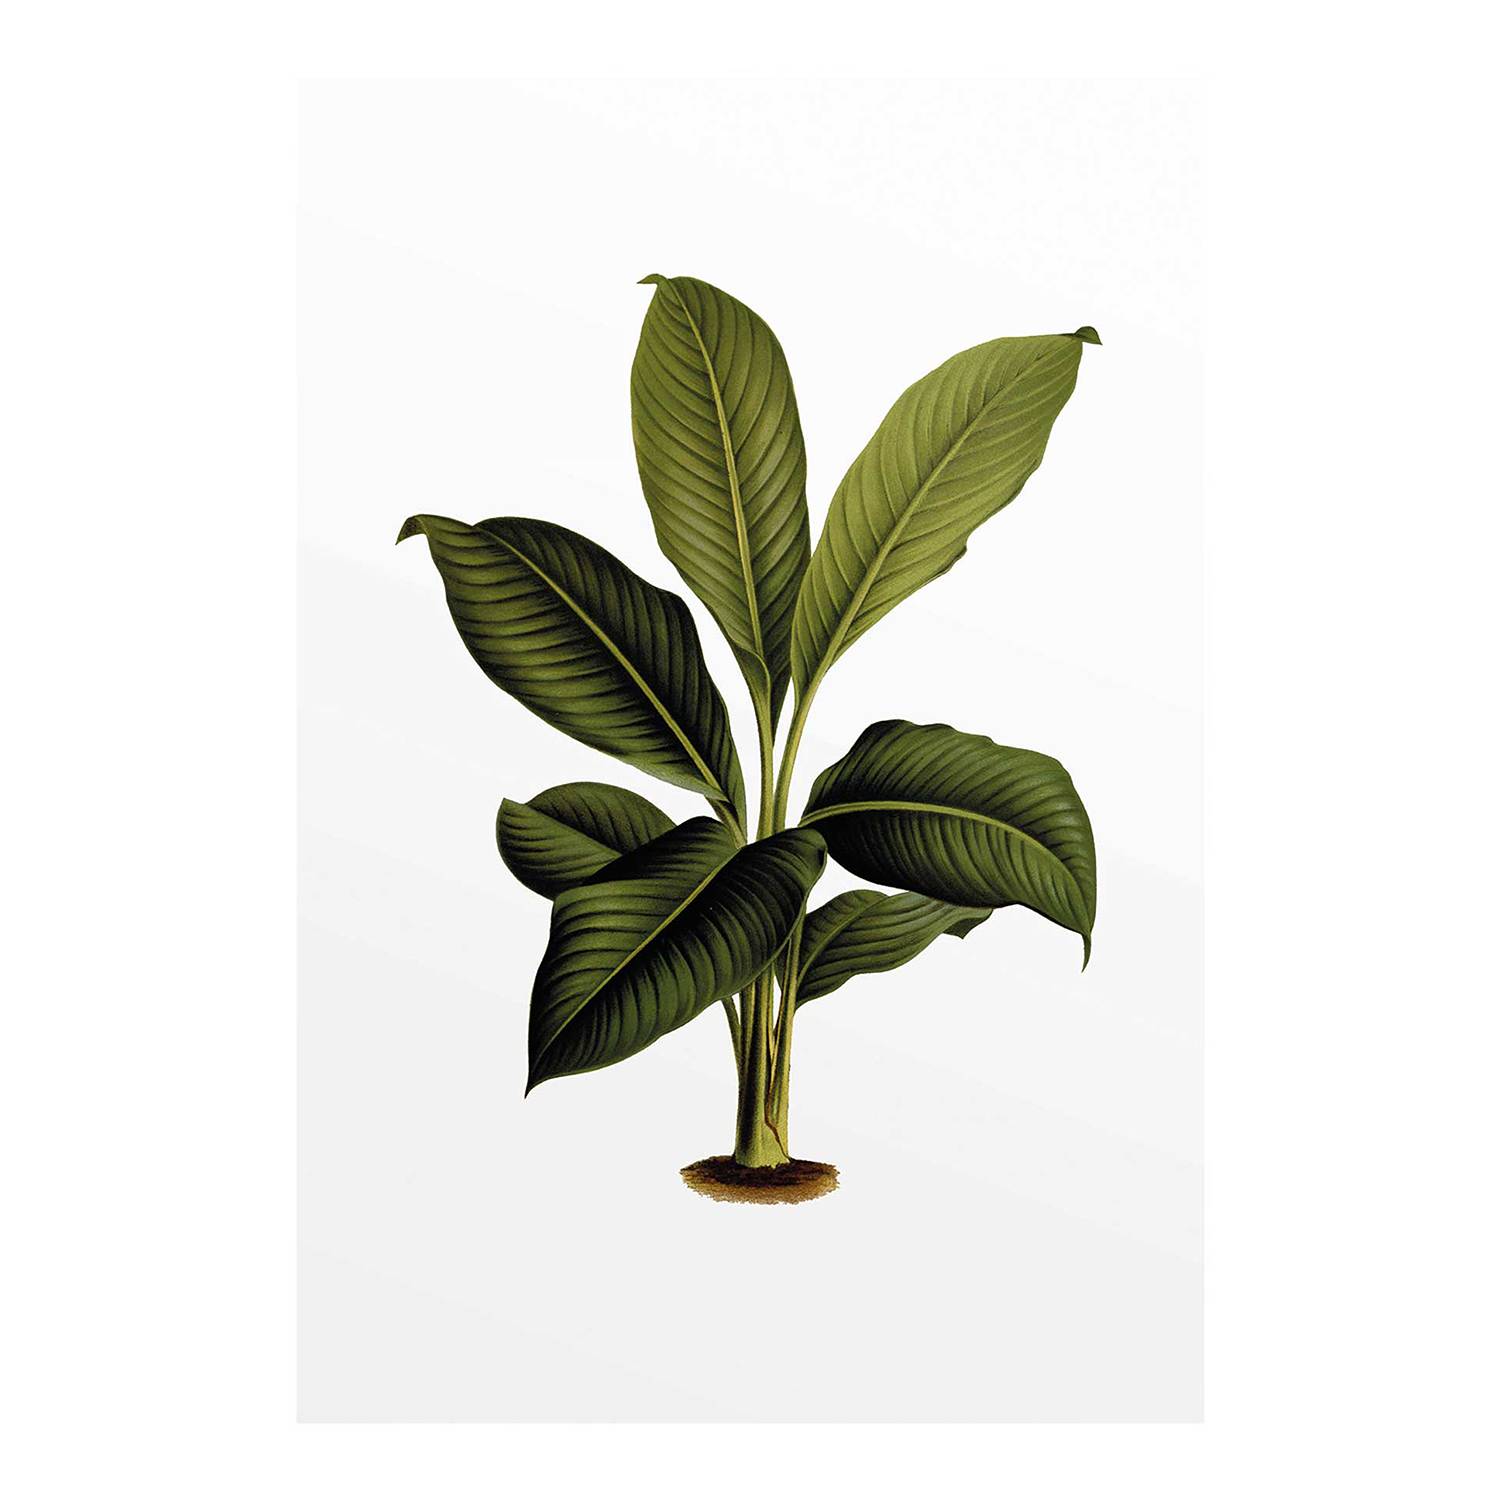 Wandbild Elastica Leaf kaufen | home24